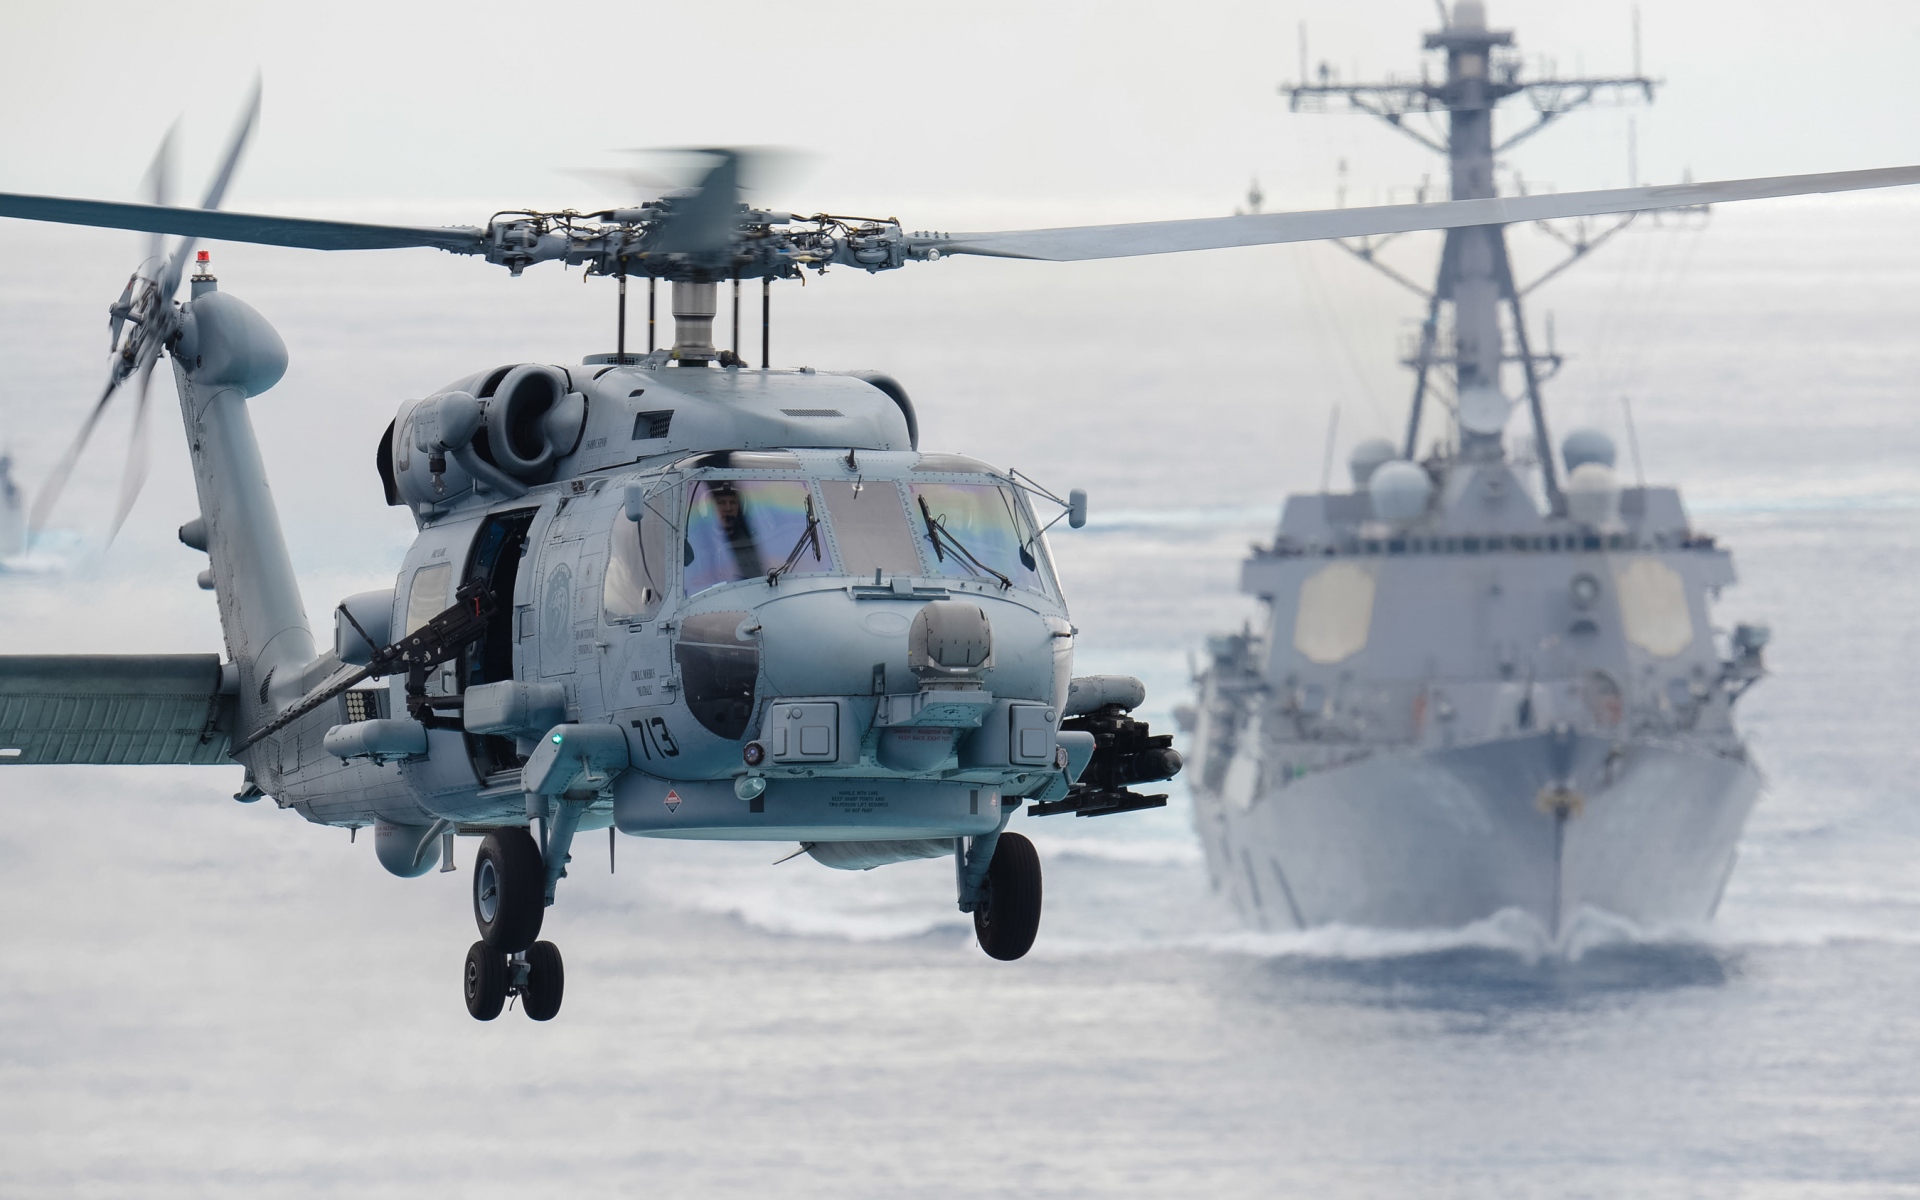 Картинки Sikorsky sh-60f, морской охотник, вертолет фото и обои на рабочий стол